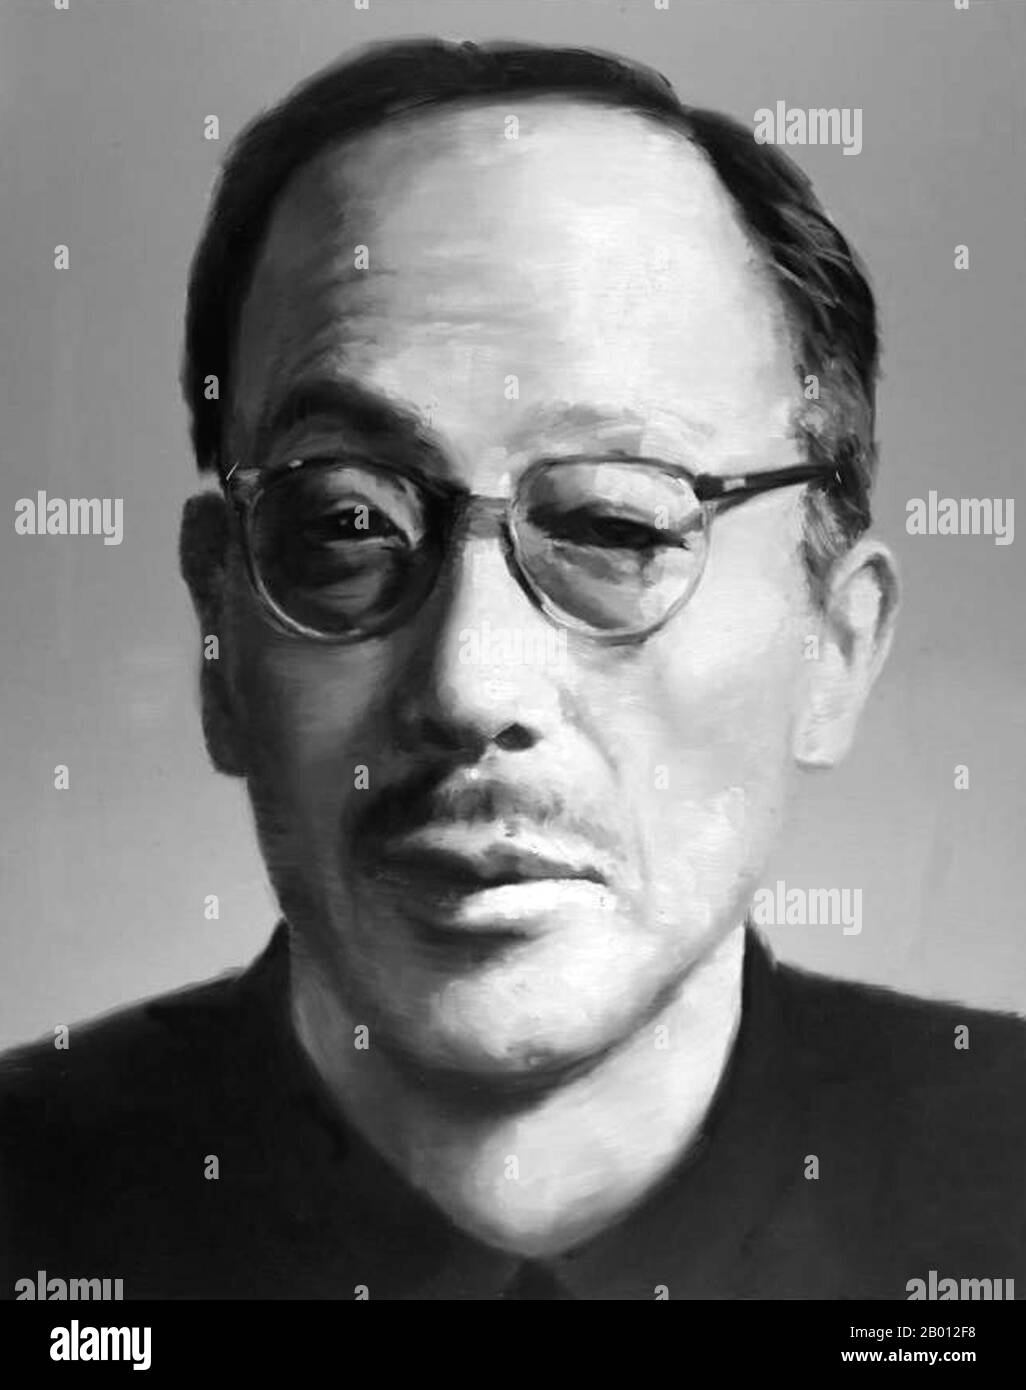 Cina: Kang Sheng (circa 1898–16 dicembre 1975), capo dell'intelligence del CCP, vicino associato di Mao Zedong e temuto poliziotto segreto. Kang Sheng (1898–16 dicembre 1975) ha supervisionato il lavoro dell'apparato di sicurezza e intelligence della Repubblica popolare cinese al culmine della rivoluzione culturale alla fine degli anni '60. Era un socio vicino di Mao Zedong ed è rimasto al o vicino al culmine del potere per i decenni. Dopo la sua morte, Kang Sheng è stato accusato di condividere la responsabilità con il gruppo dei quattro per gli eccessi della rivoluzione culturale e fu espulso postumo dal partito. Foto Stock